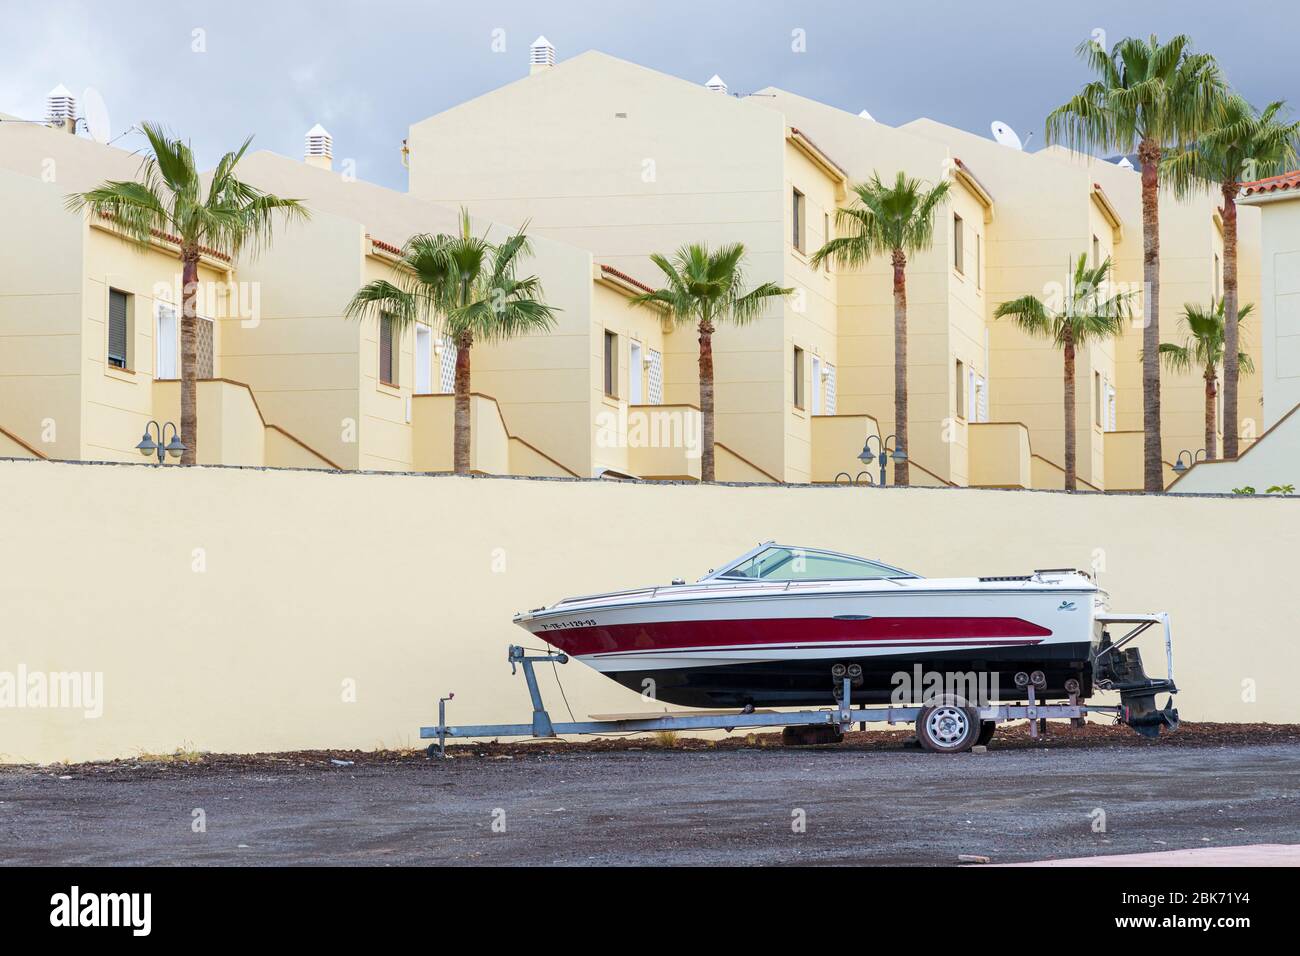 Motoscafo su un rimorchio parcheggiato accanto ad un complesso di appartamenti durante il covid 19 lockdown nella zona turistica di Costa Adeje, Tenerife, Canarie I. Foto Stock